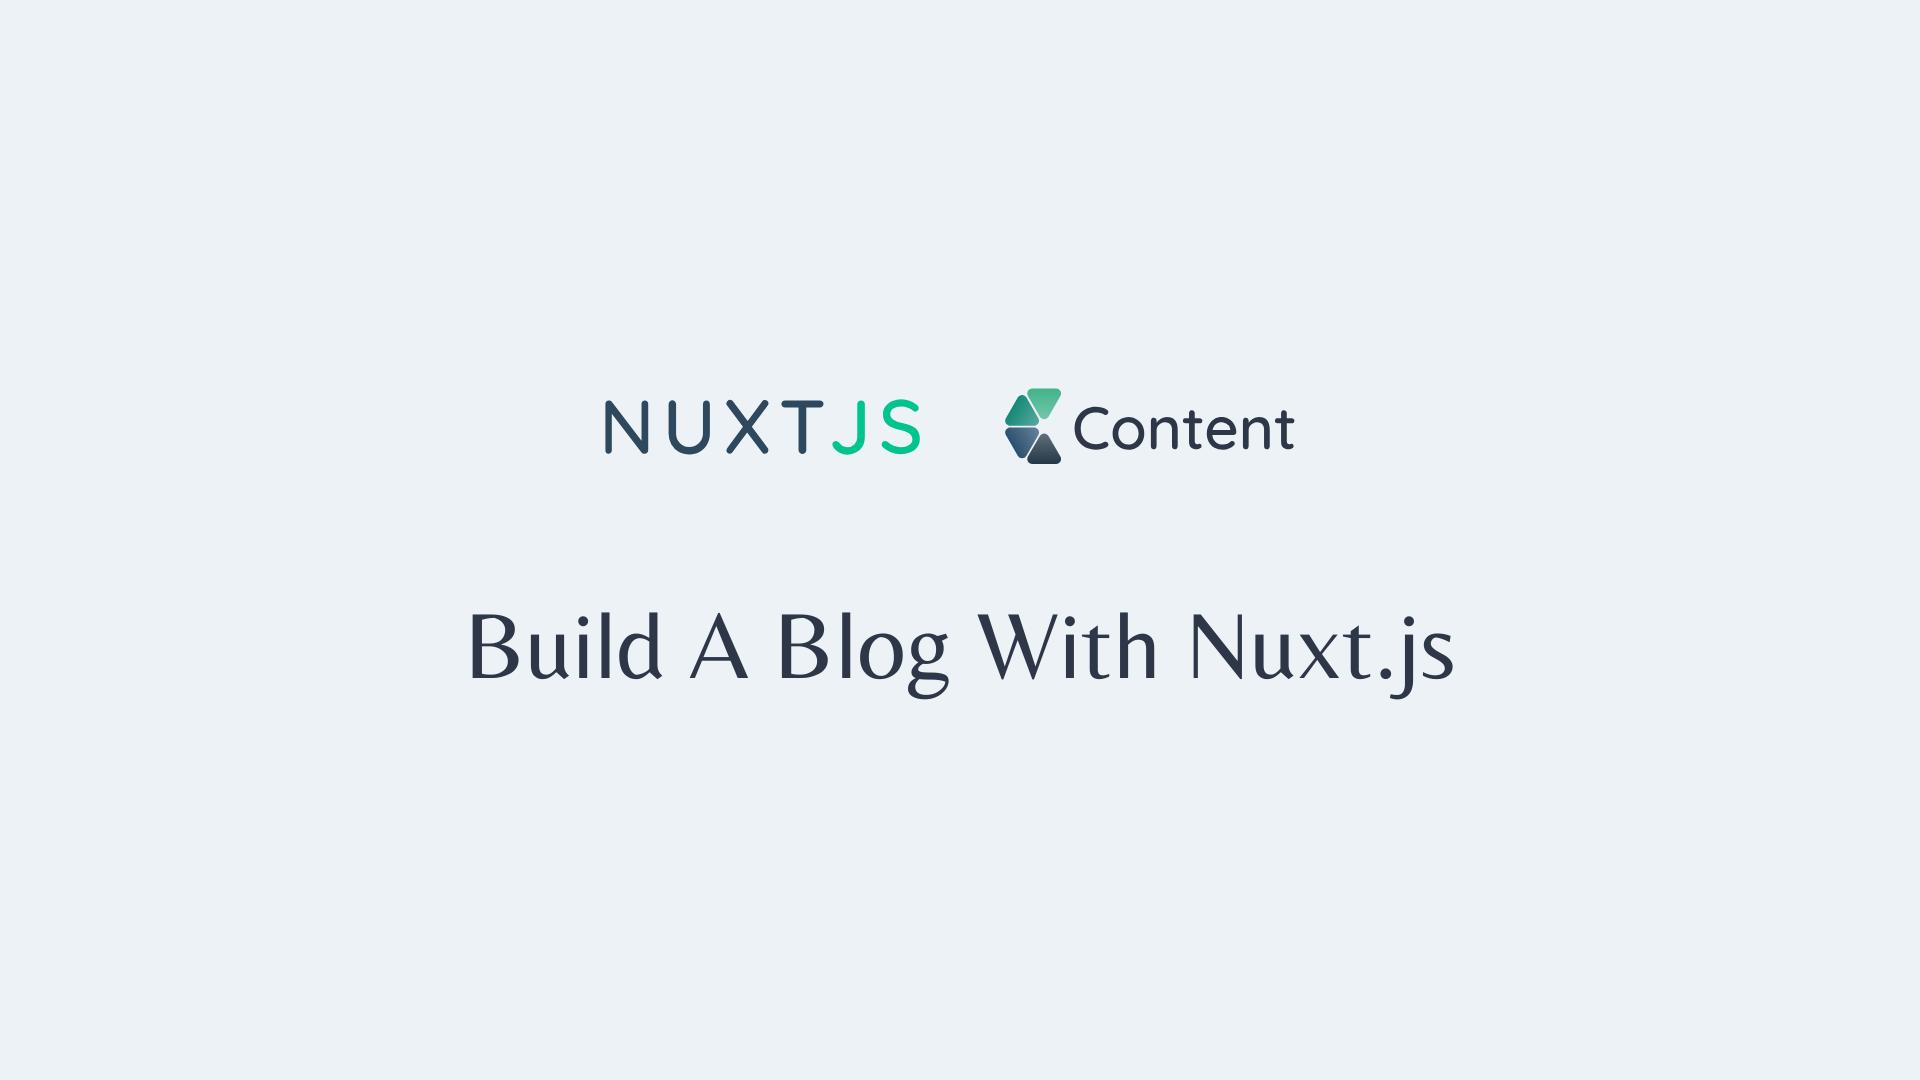 Build a blog with Nuxt.js